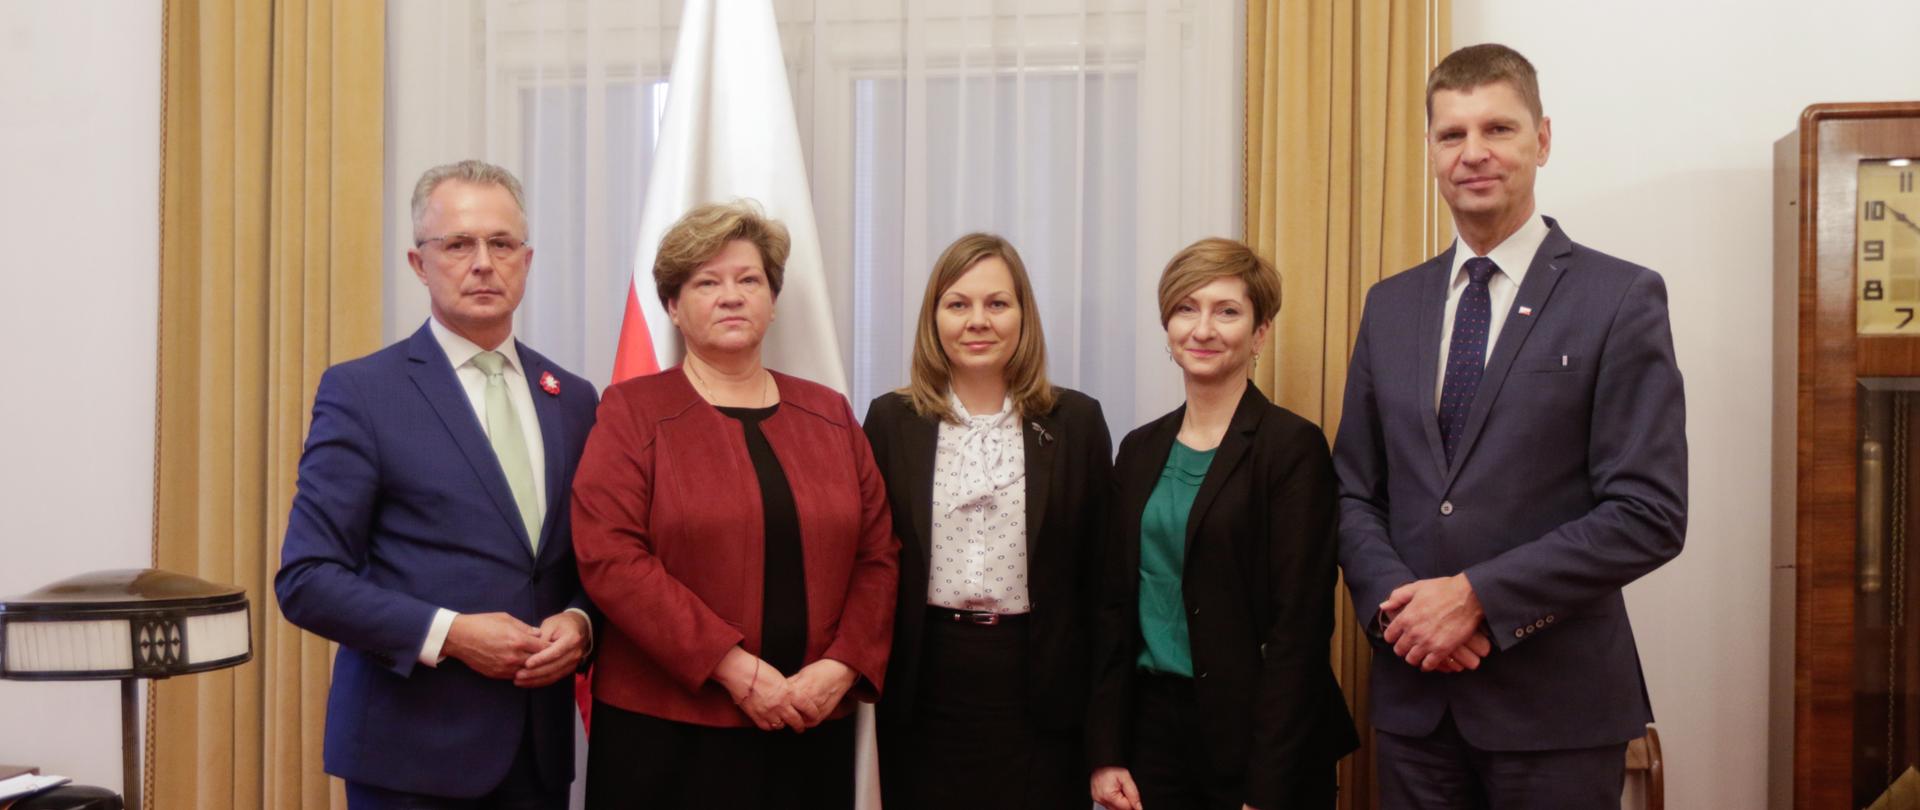 Przedstawiciele Ministerstwa Edukacji i Nauki oraz Ośrodka Rozwoju Polskiej Edukacji za Granicą pozują w szeregu do zdjęcia w pokoju.